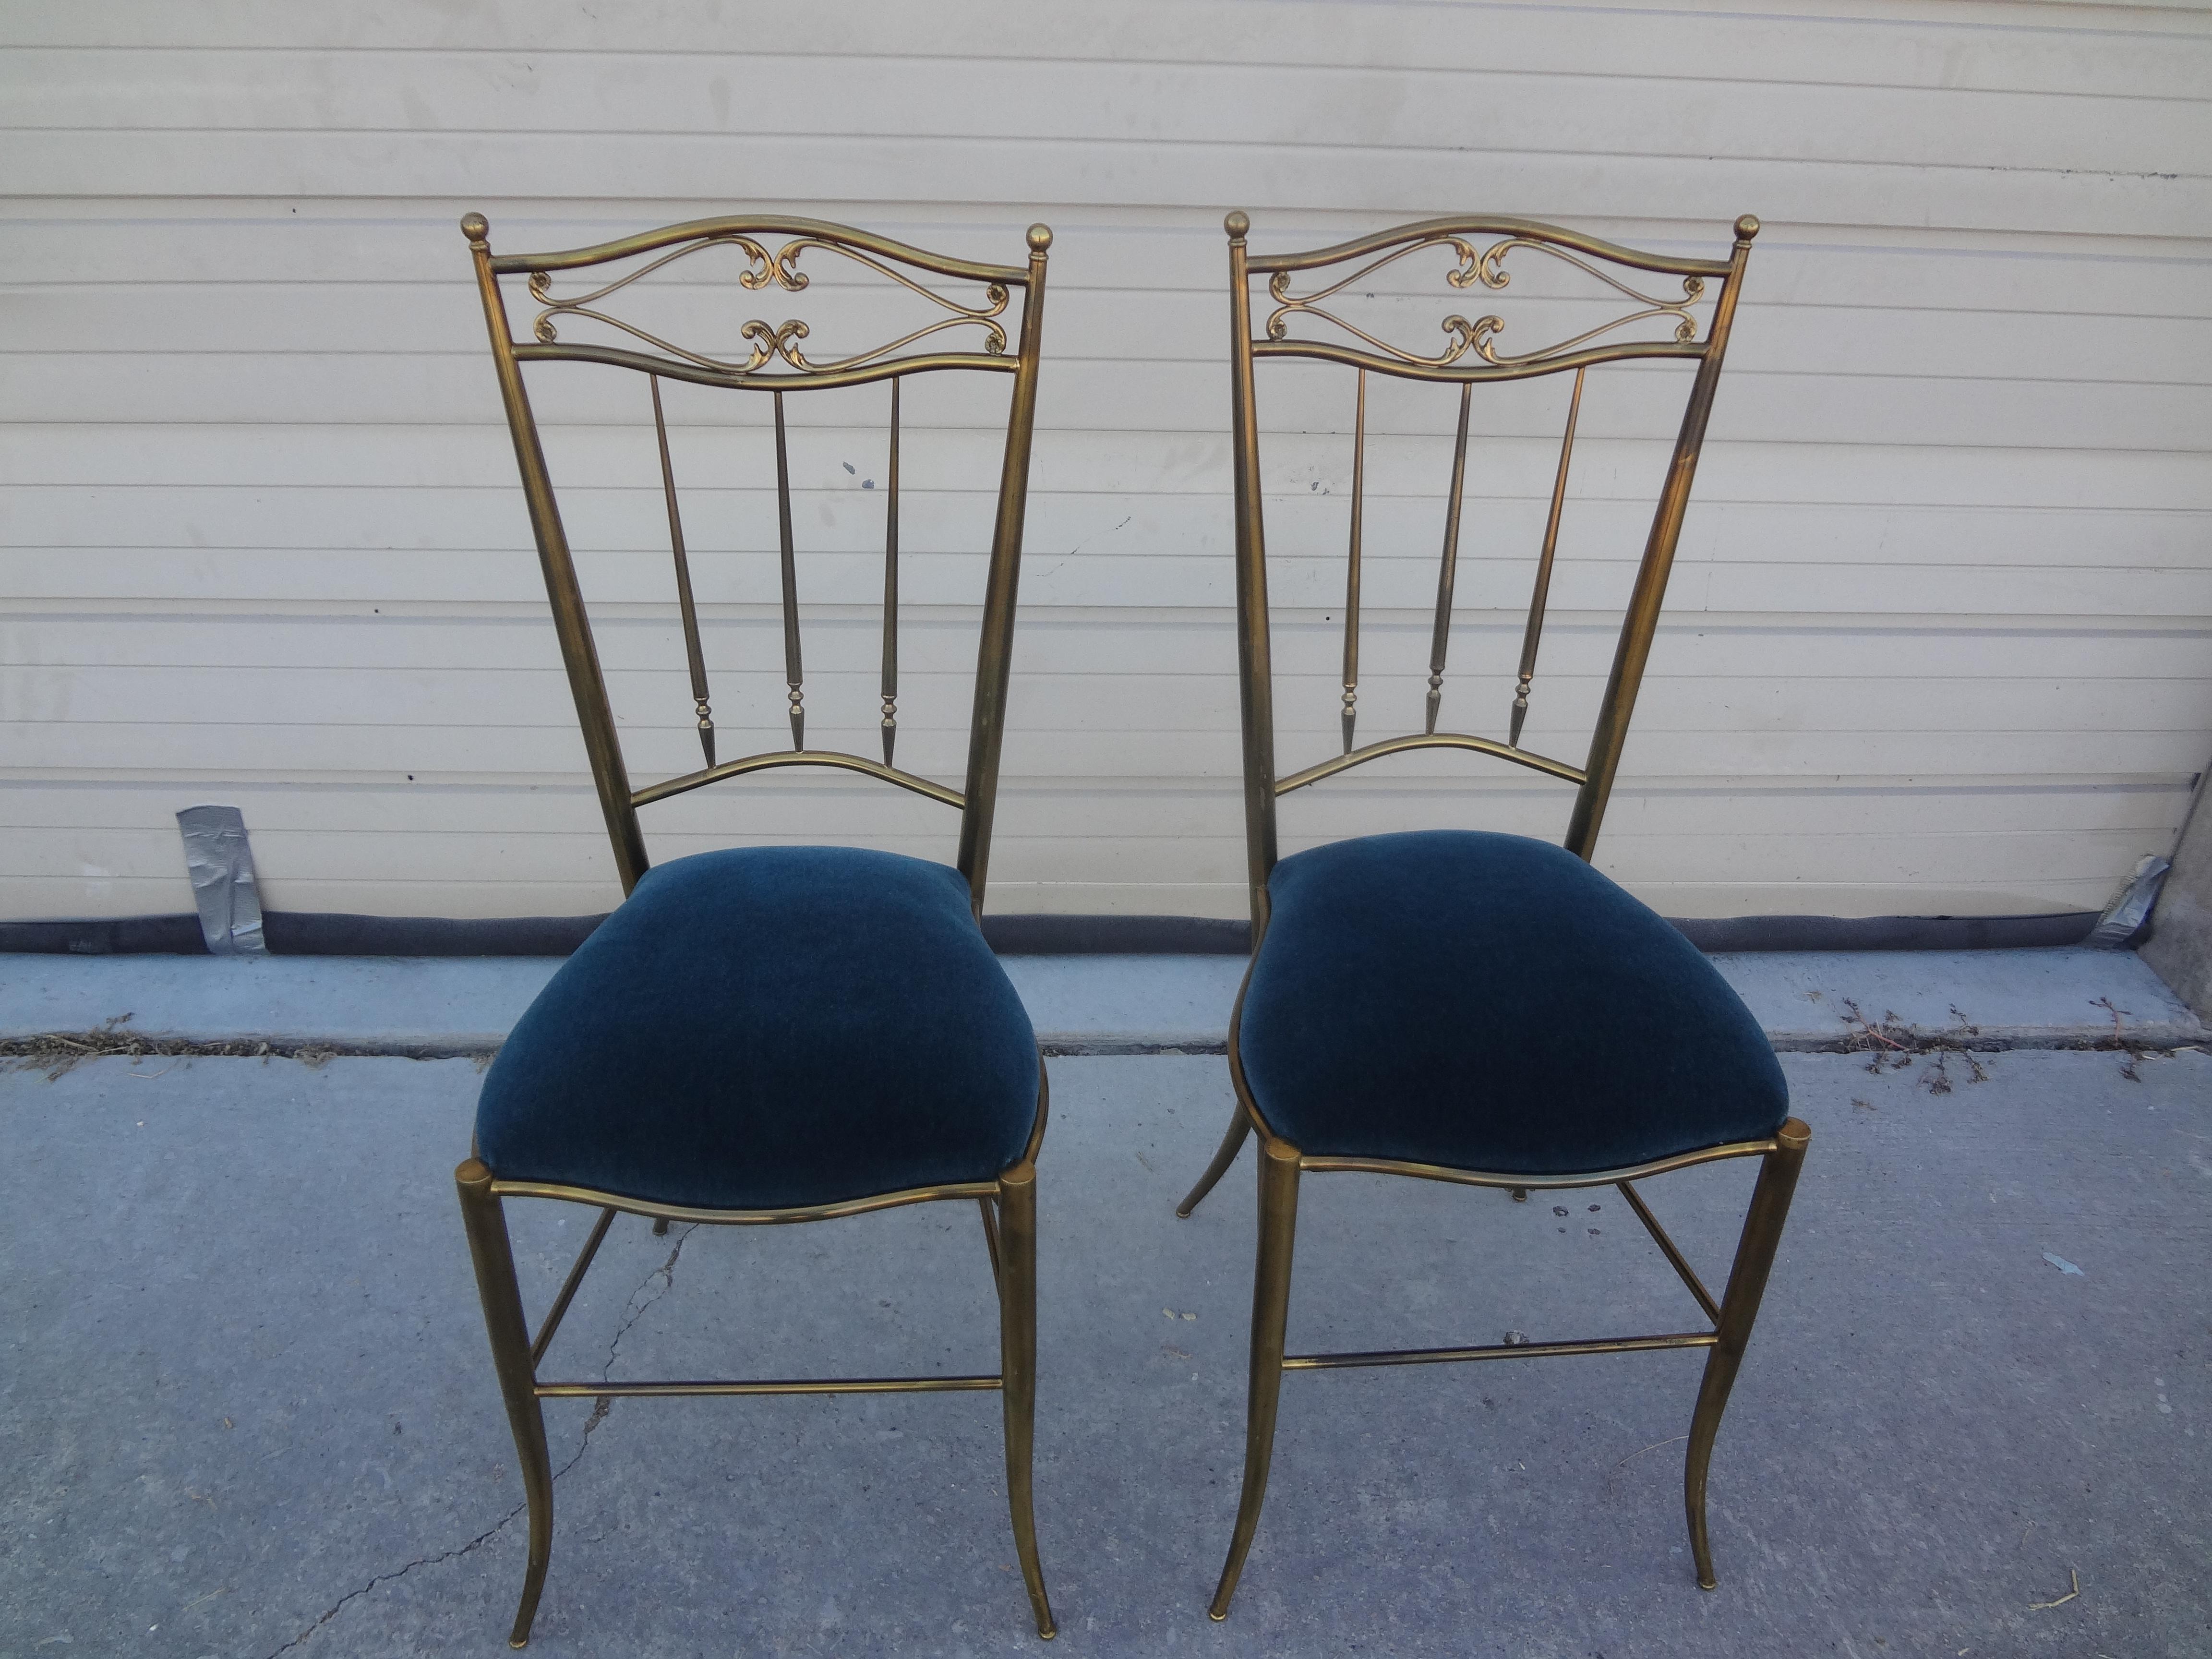 Ein Paar italienische Chiavari Beistellstühle im neoklassischen Stil aus Messing. Dieses atemberaubende Paar italienischer Chiavari-Stühle im Vintage-Stil ist neu gepolstert und in einem schönen Blauton aus Mohair gehalten. Perfekt zum Flankieren